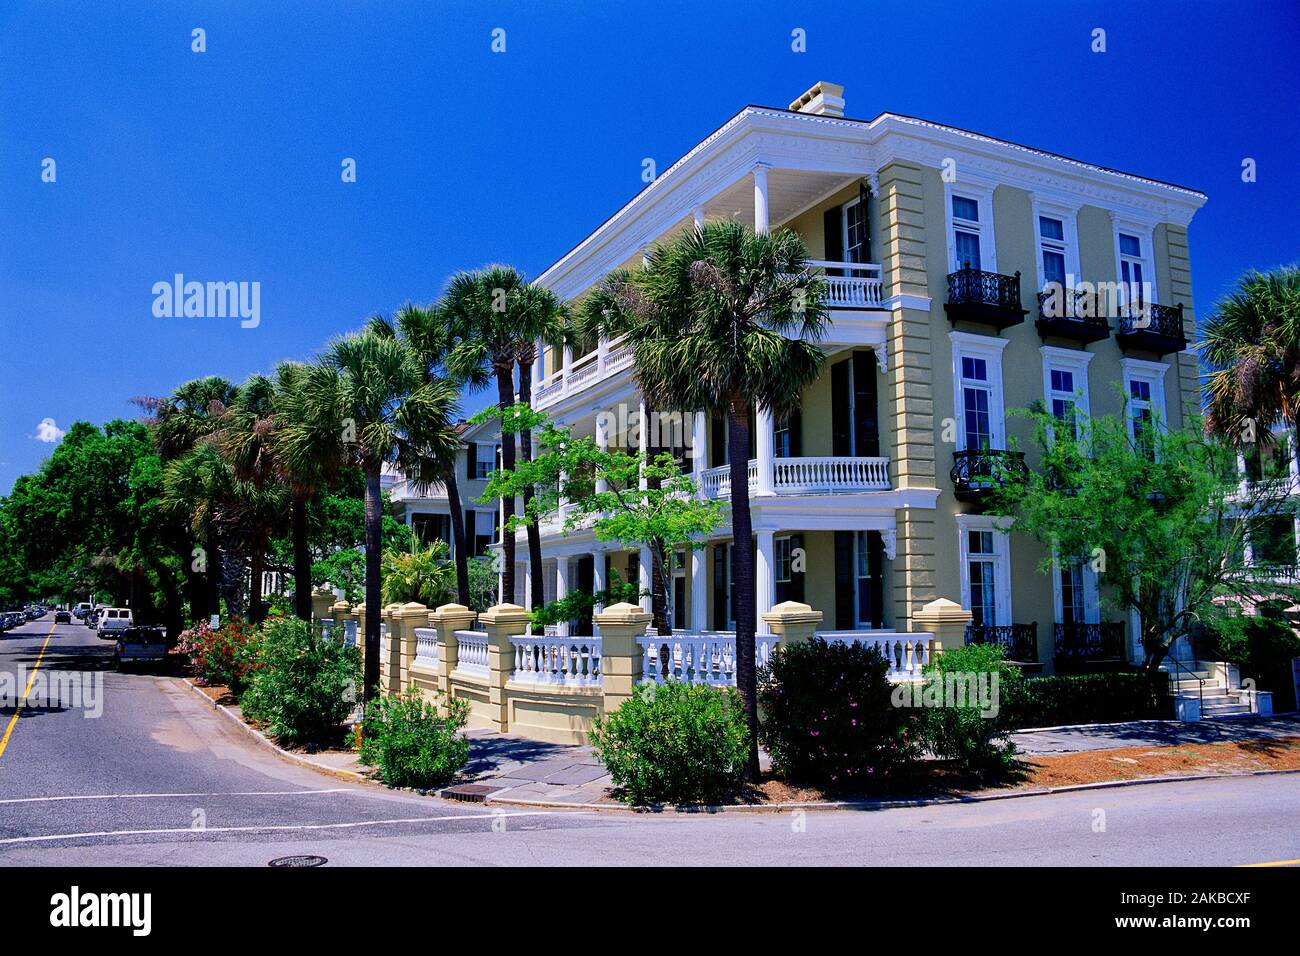 Blick auf die Straße, Bürgersteig und Häuser, Charleston, South Carolina, USA Stockfoto